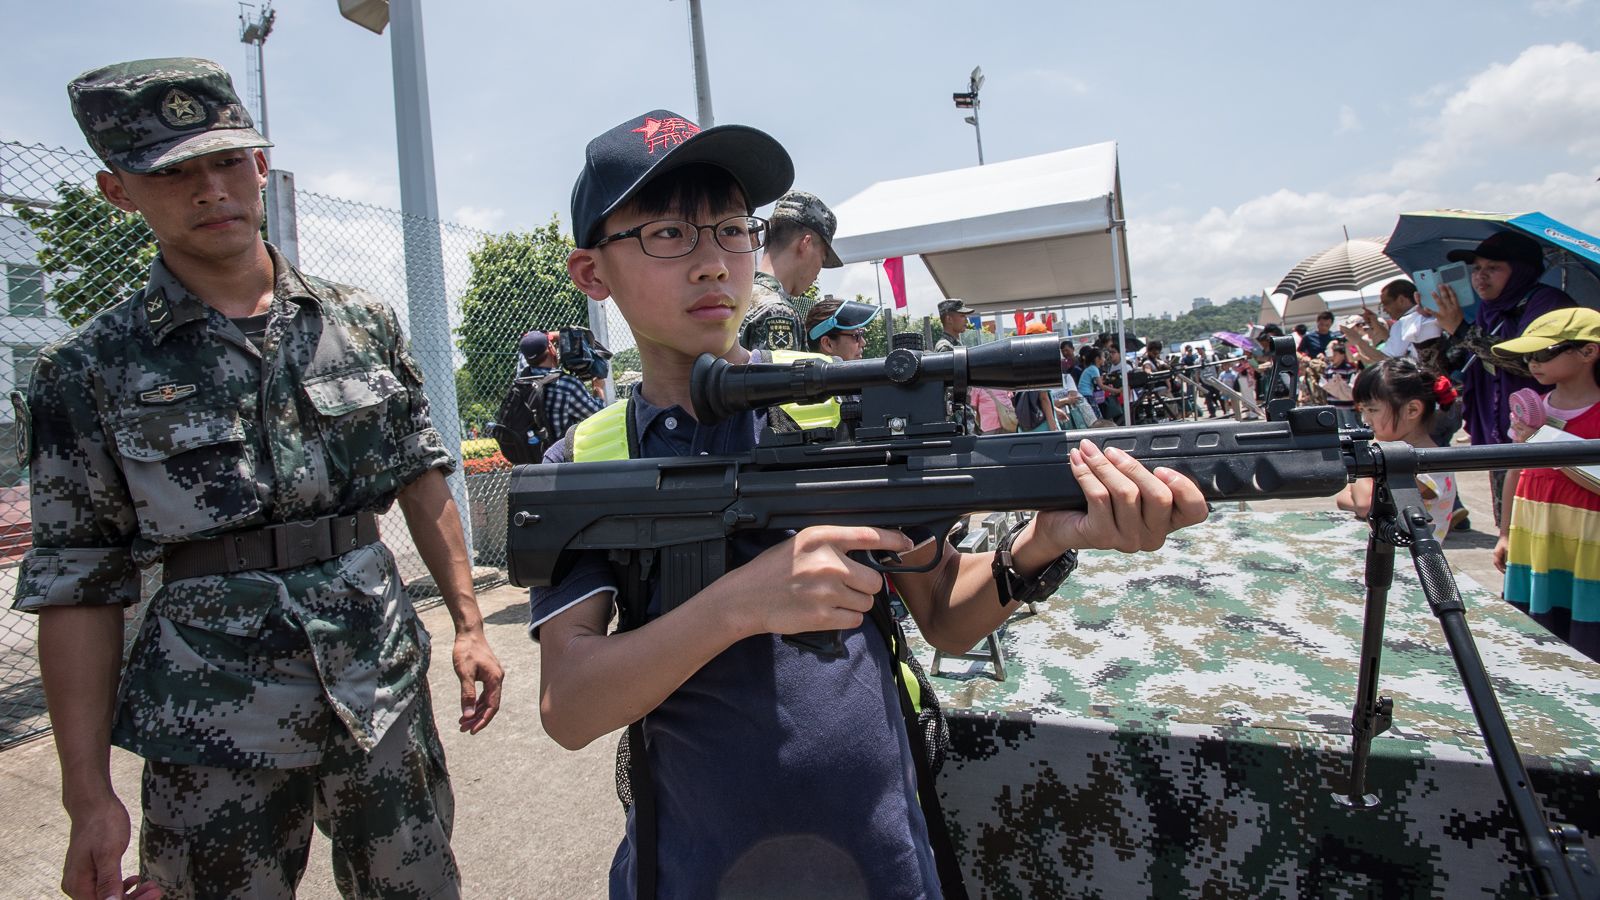 chinese military rifle